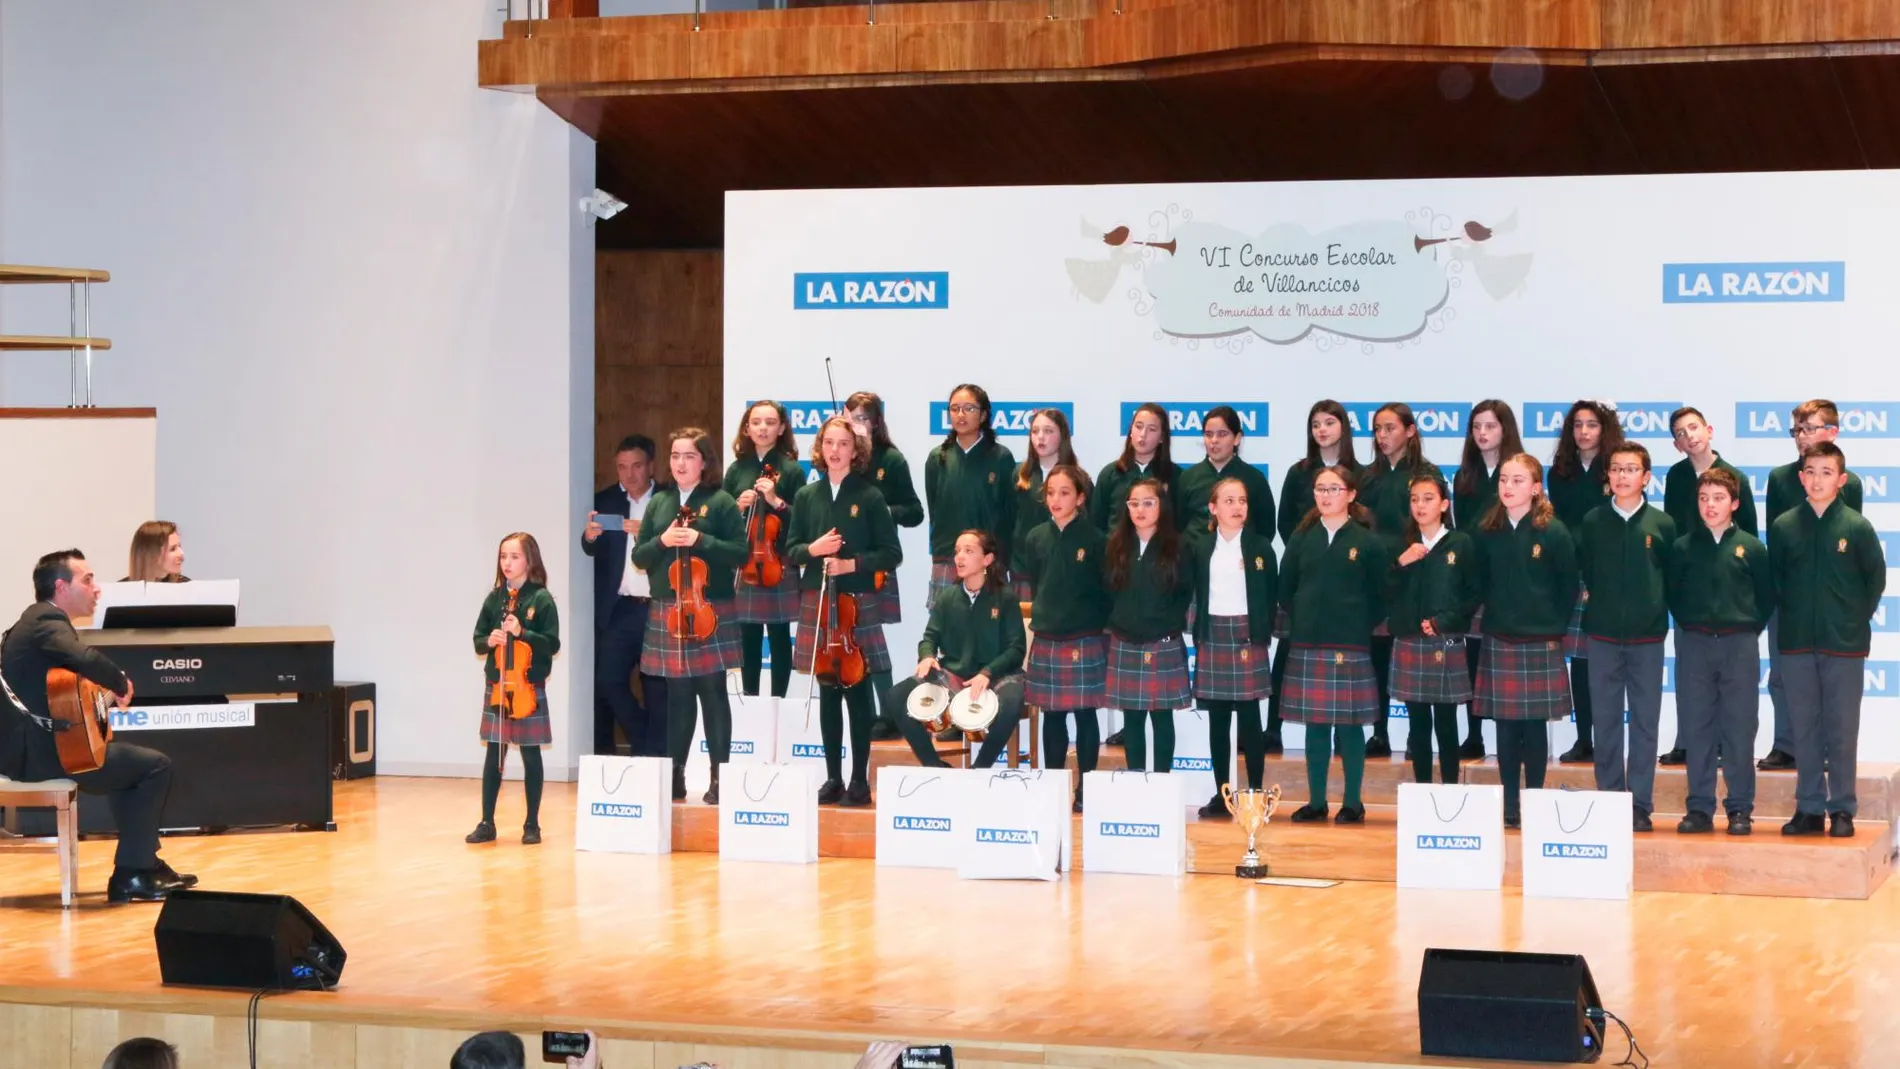 El colegio Virgen del Remedio de Alcorcón gana el Concurso de Villancicos de LA RAZÓN